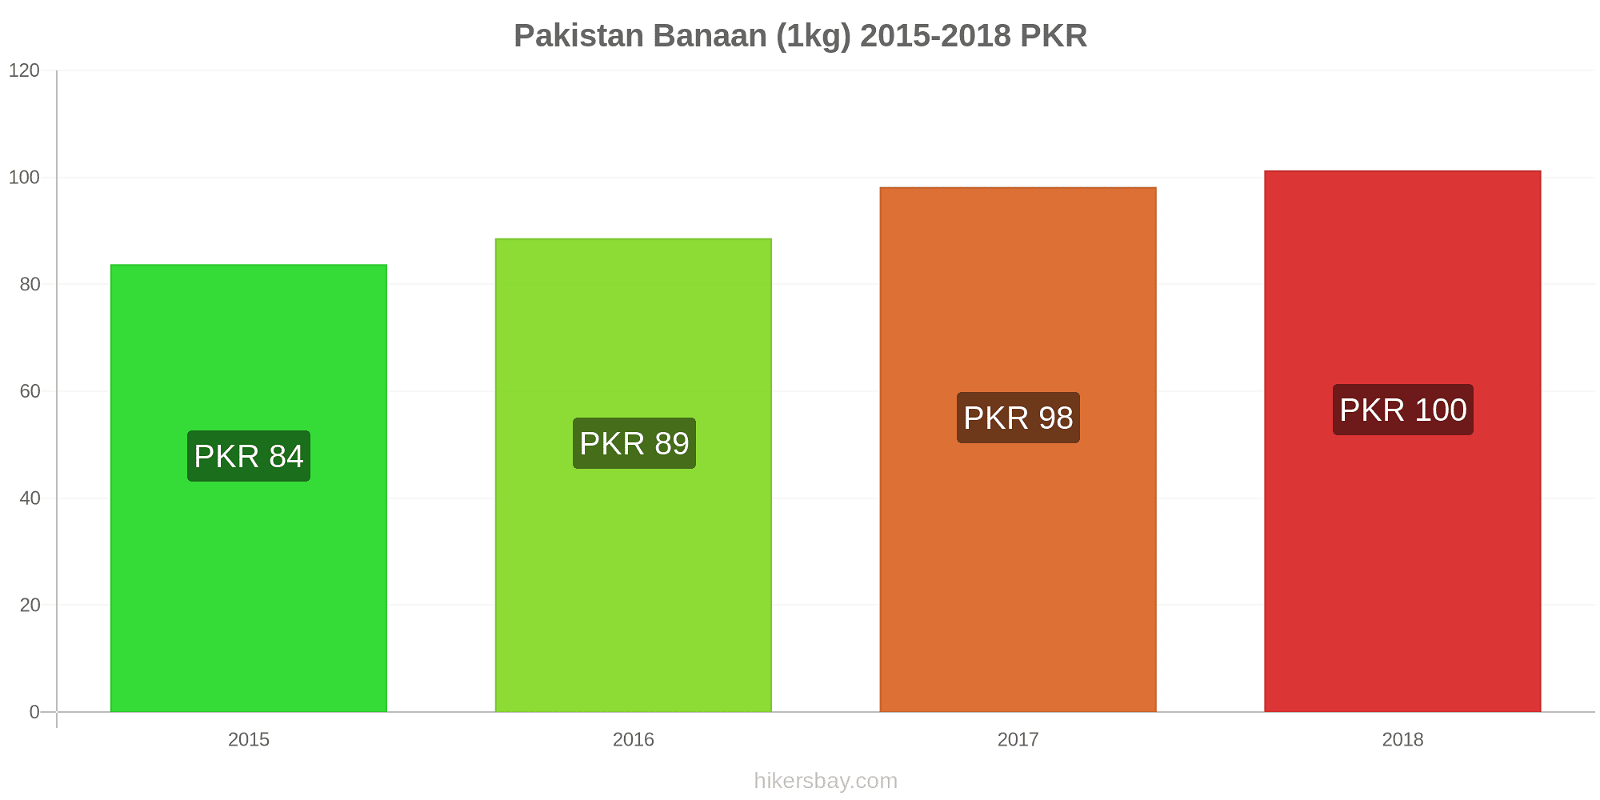 Pakistan prijswijzigingen Bananen (1kg) hikersbay.com